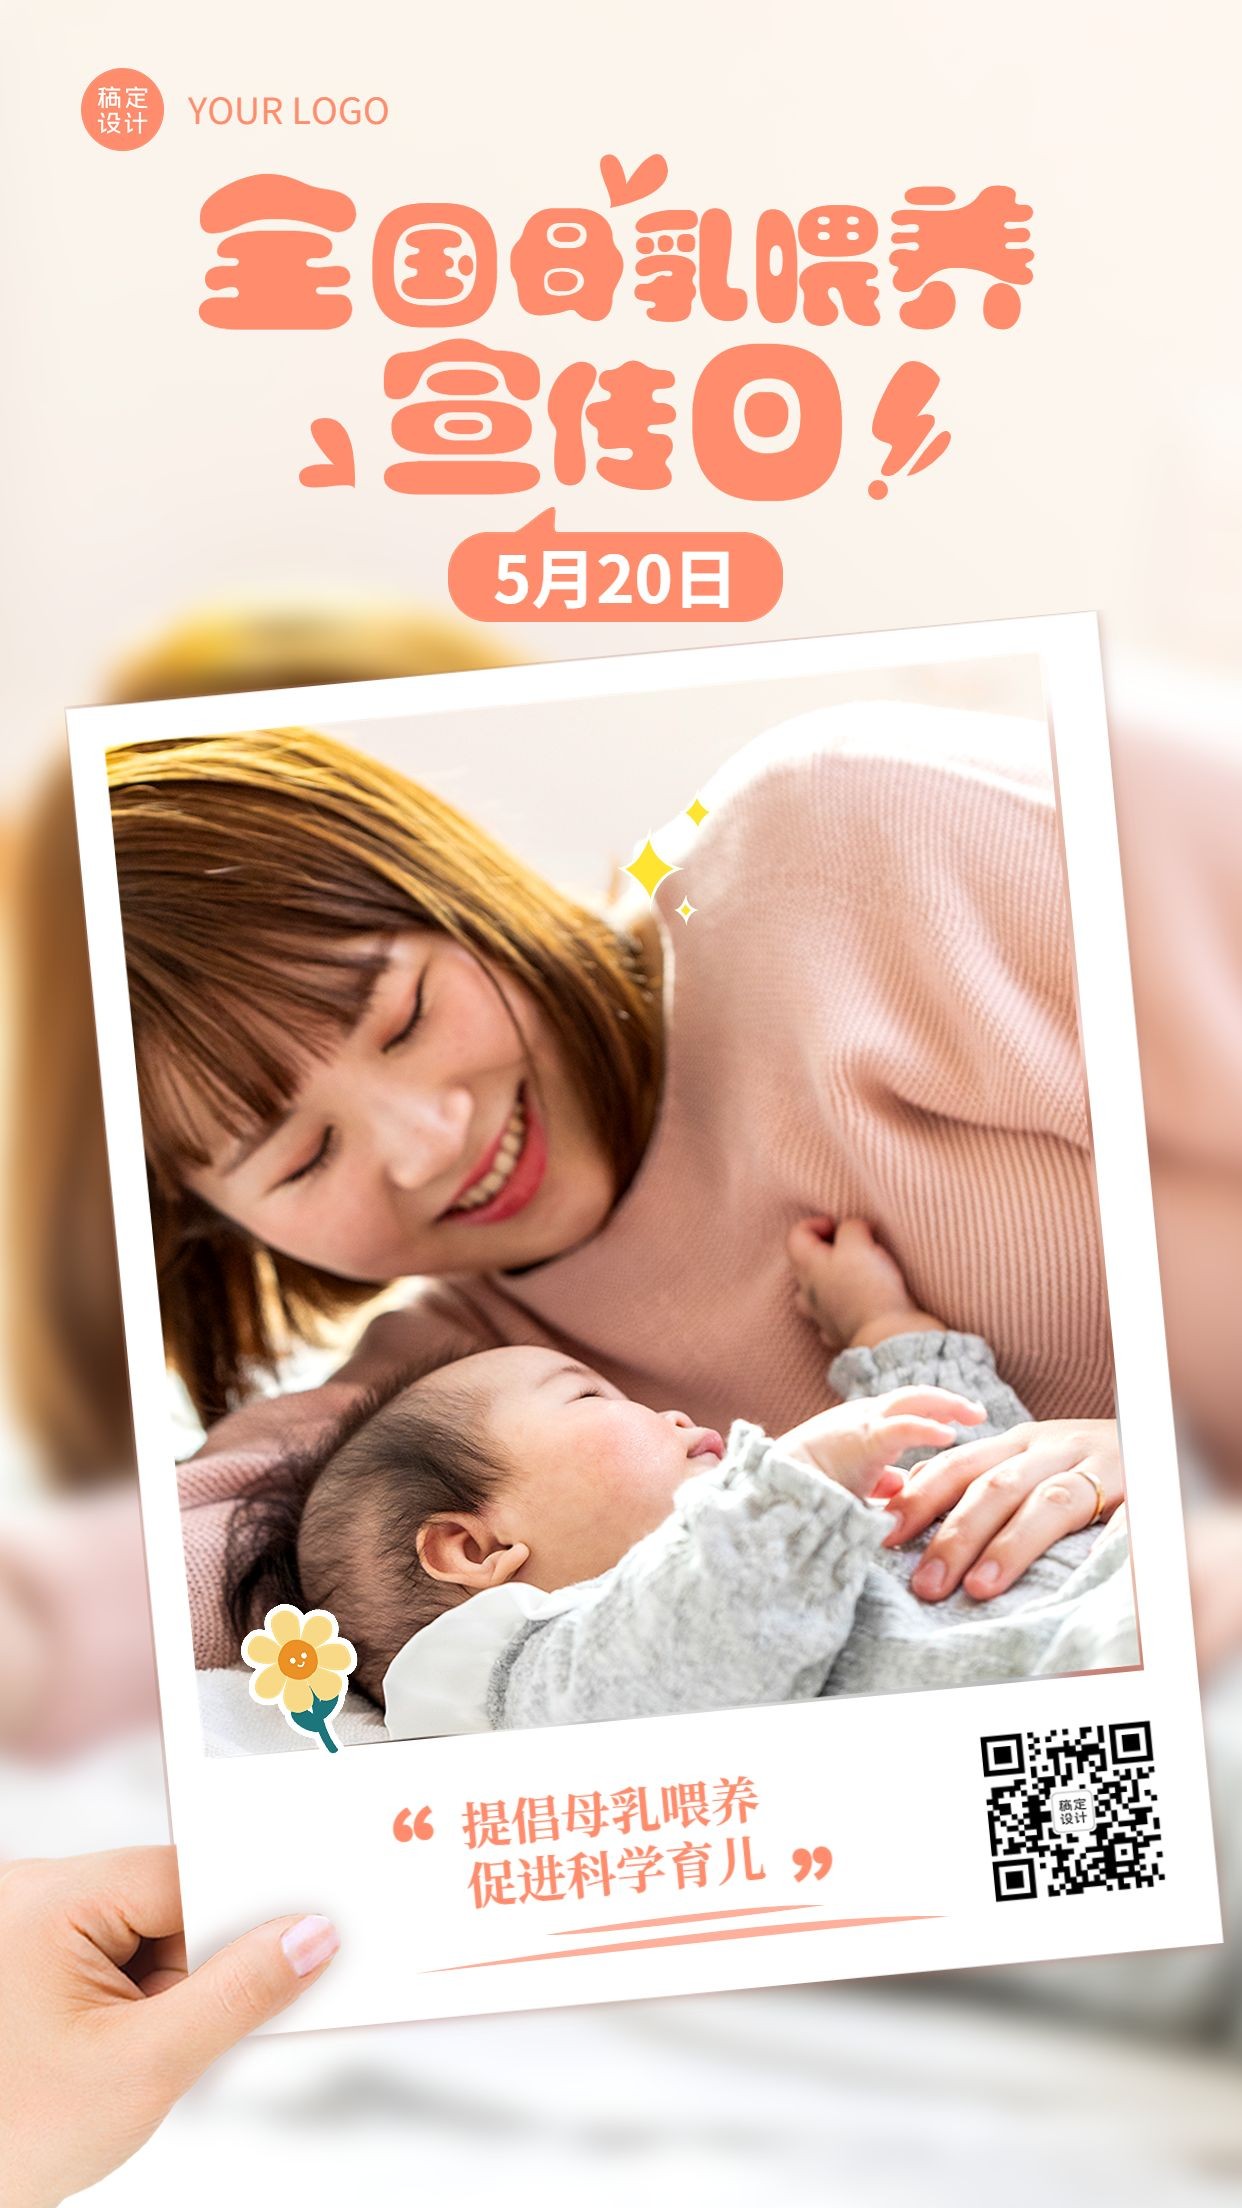 全国母乳喂养宣传日节日宣传手机海报预览效果